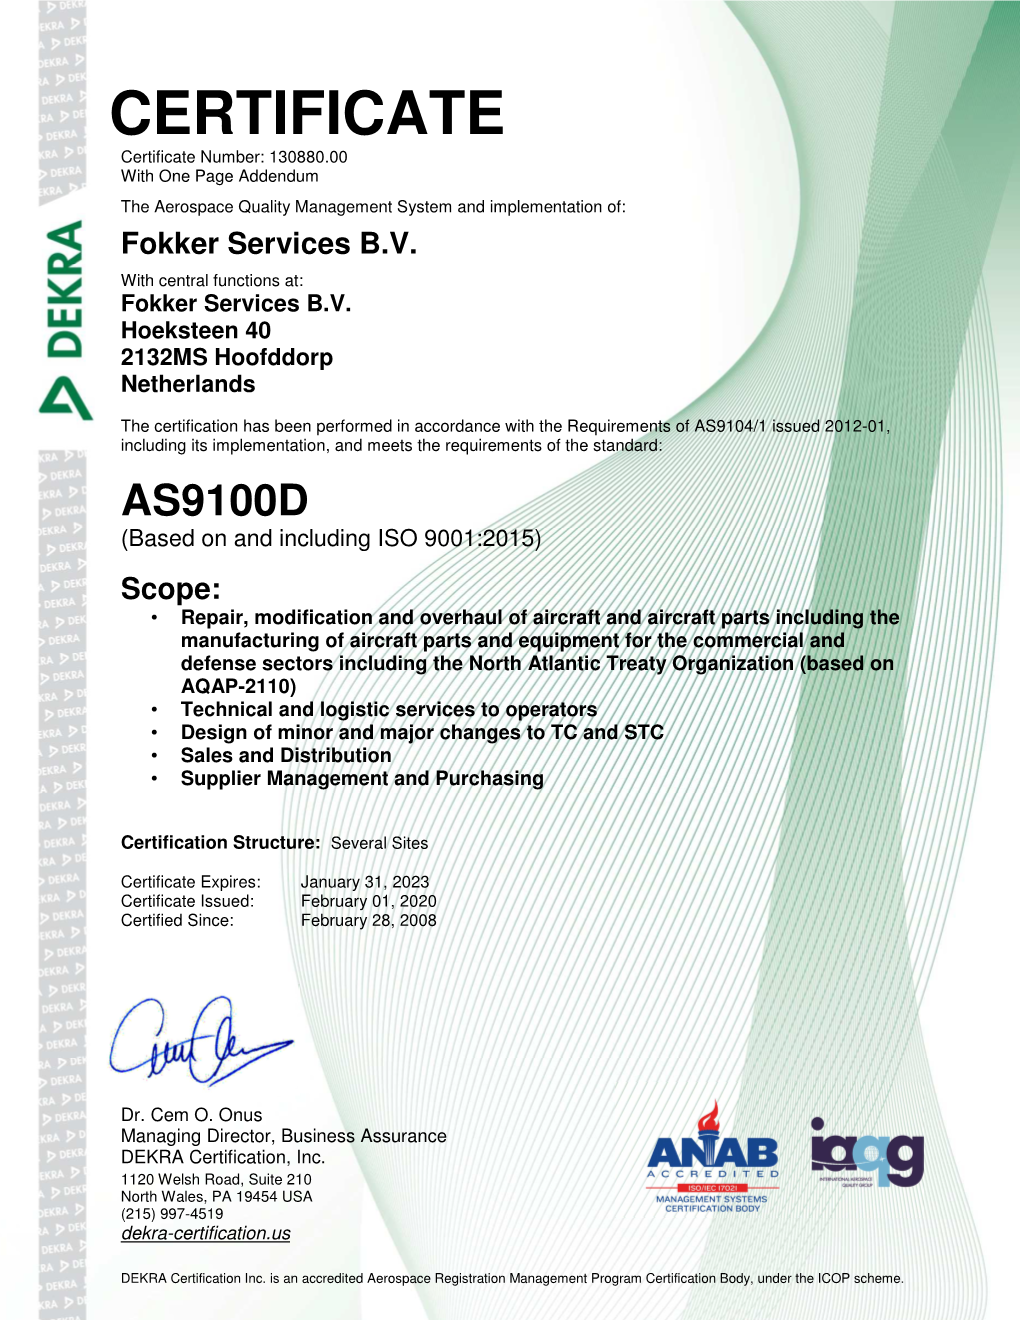 DEKRA AS9100D Incl. ISO 9001